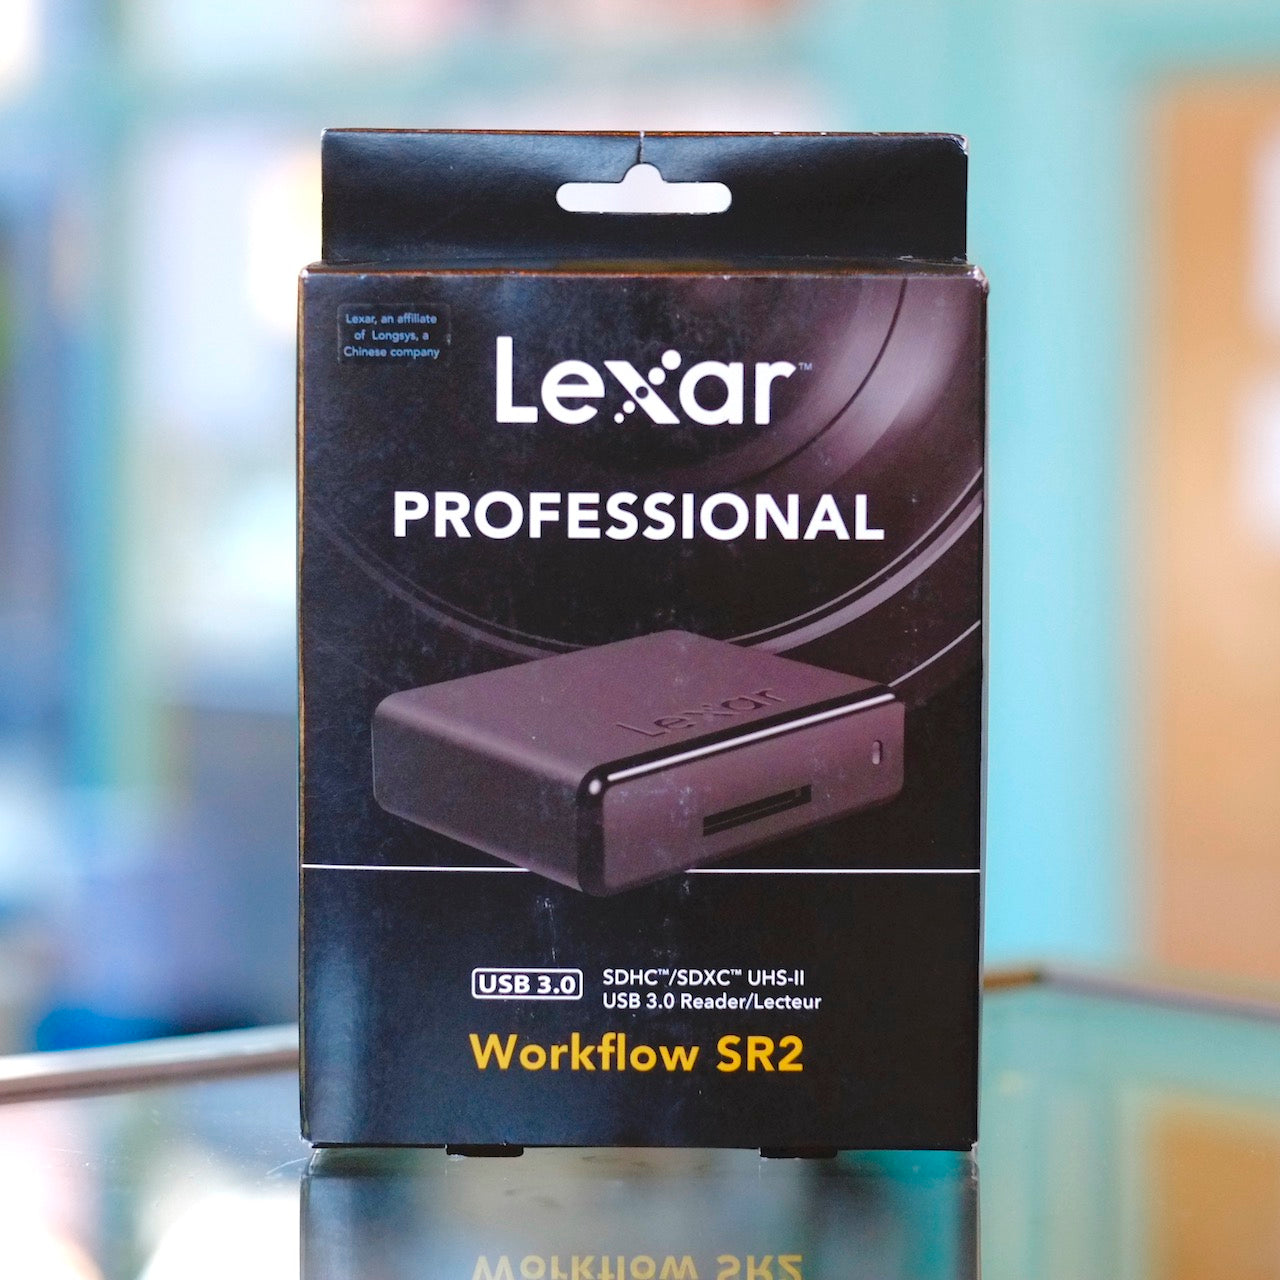 Lexar Workflow SR2 SD card reader